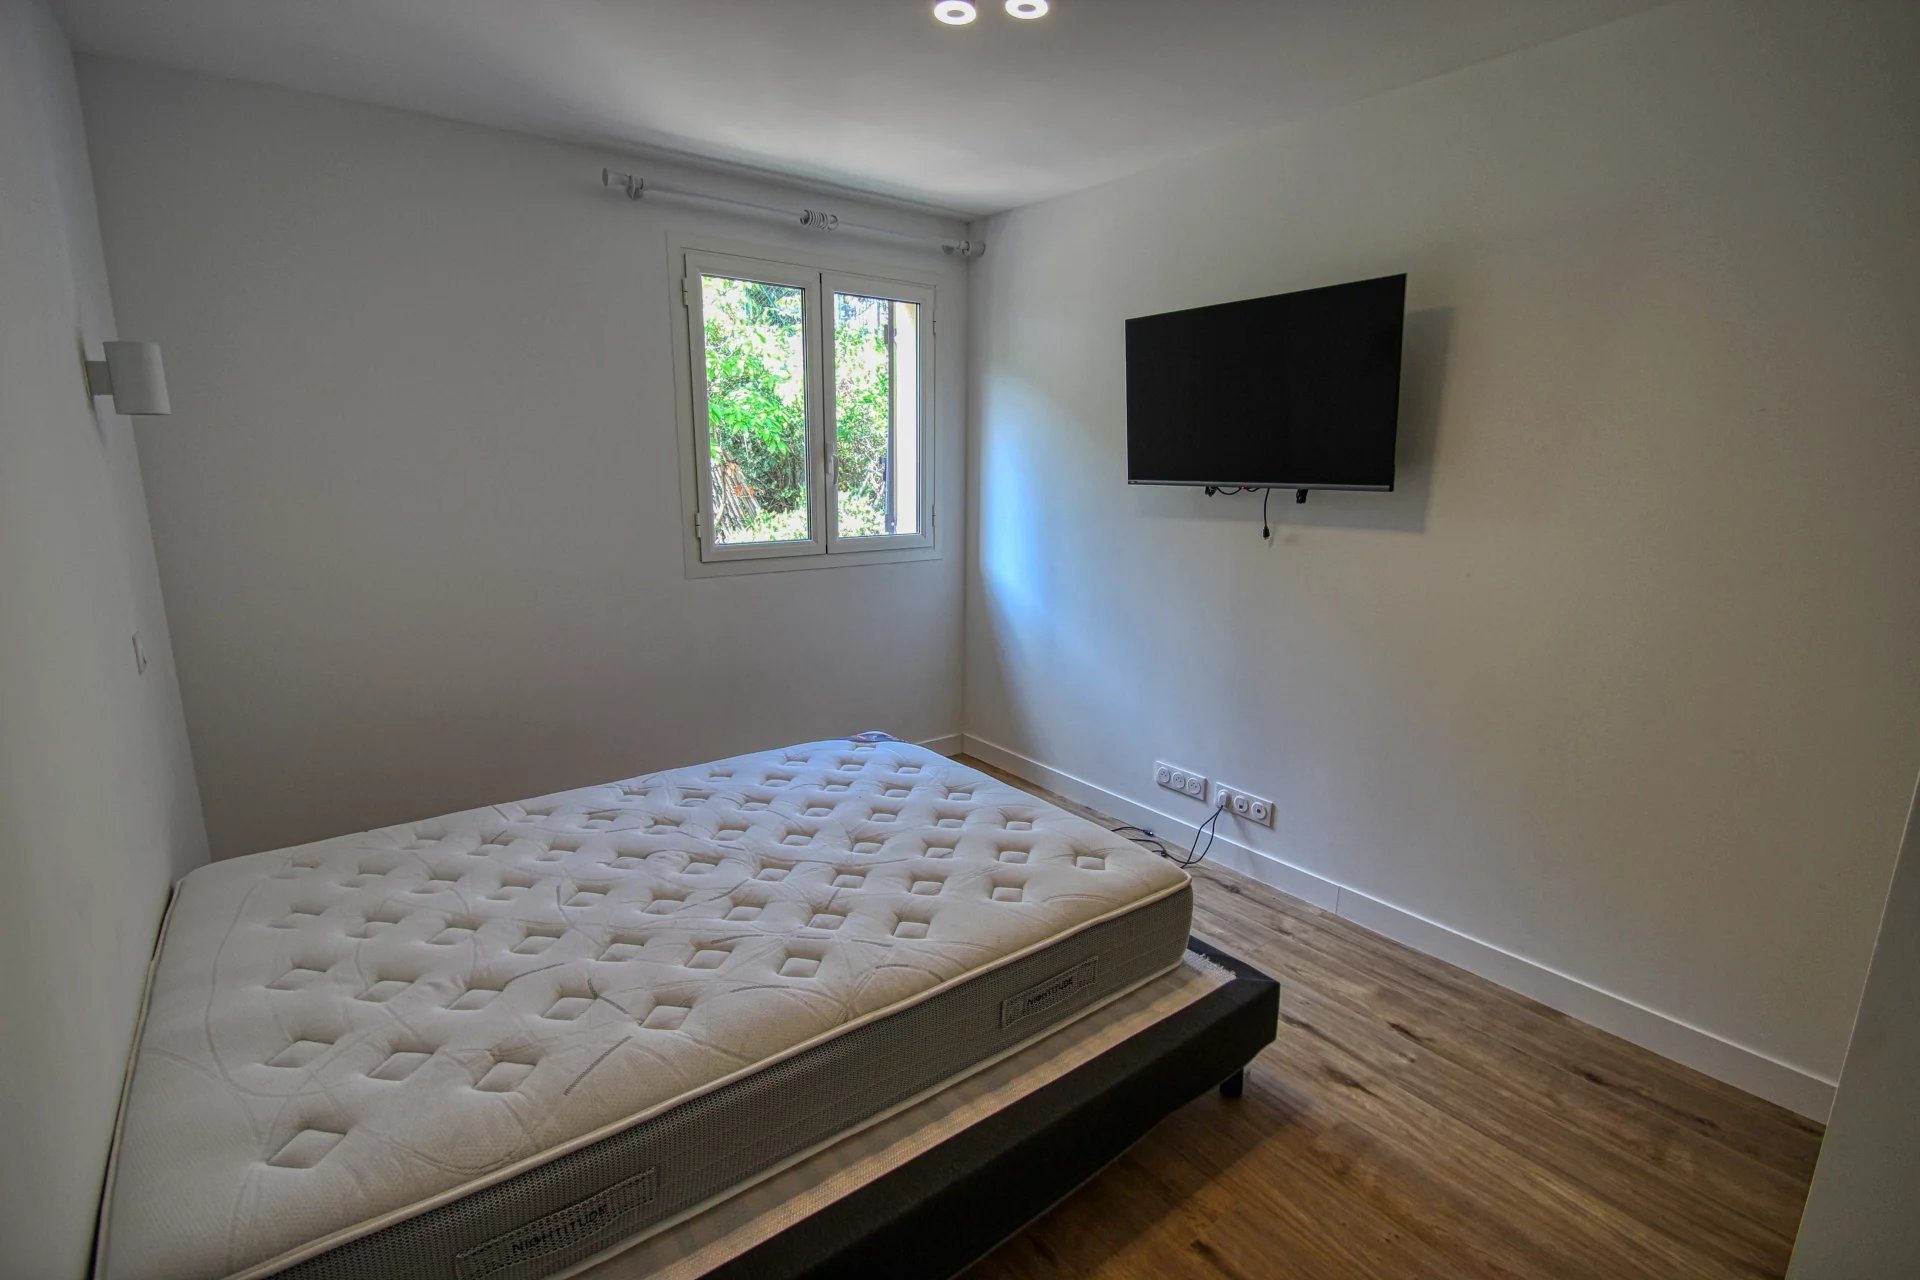 LA TURBIE "Les Serriers" Villa 3 bedrooms - Independant apartments - Calm - Pool